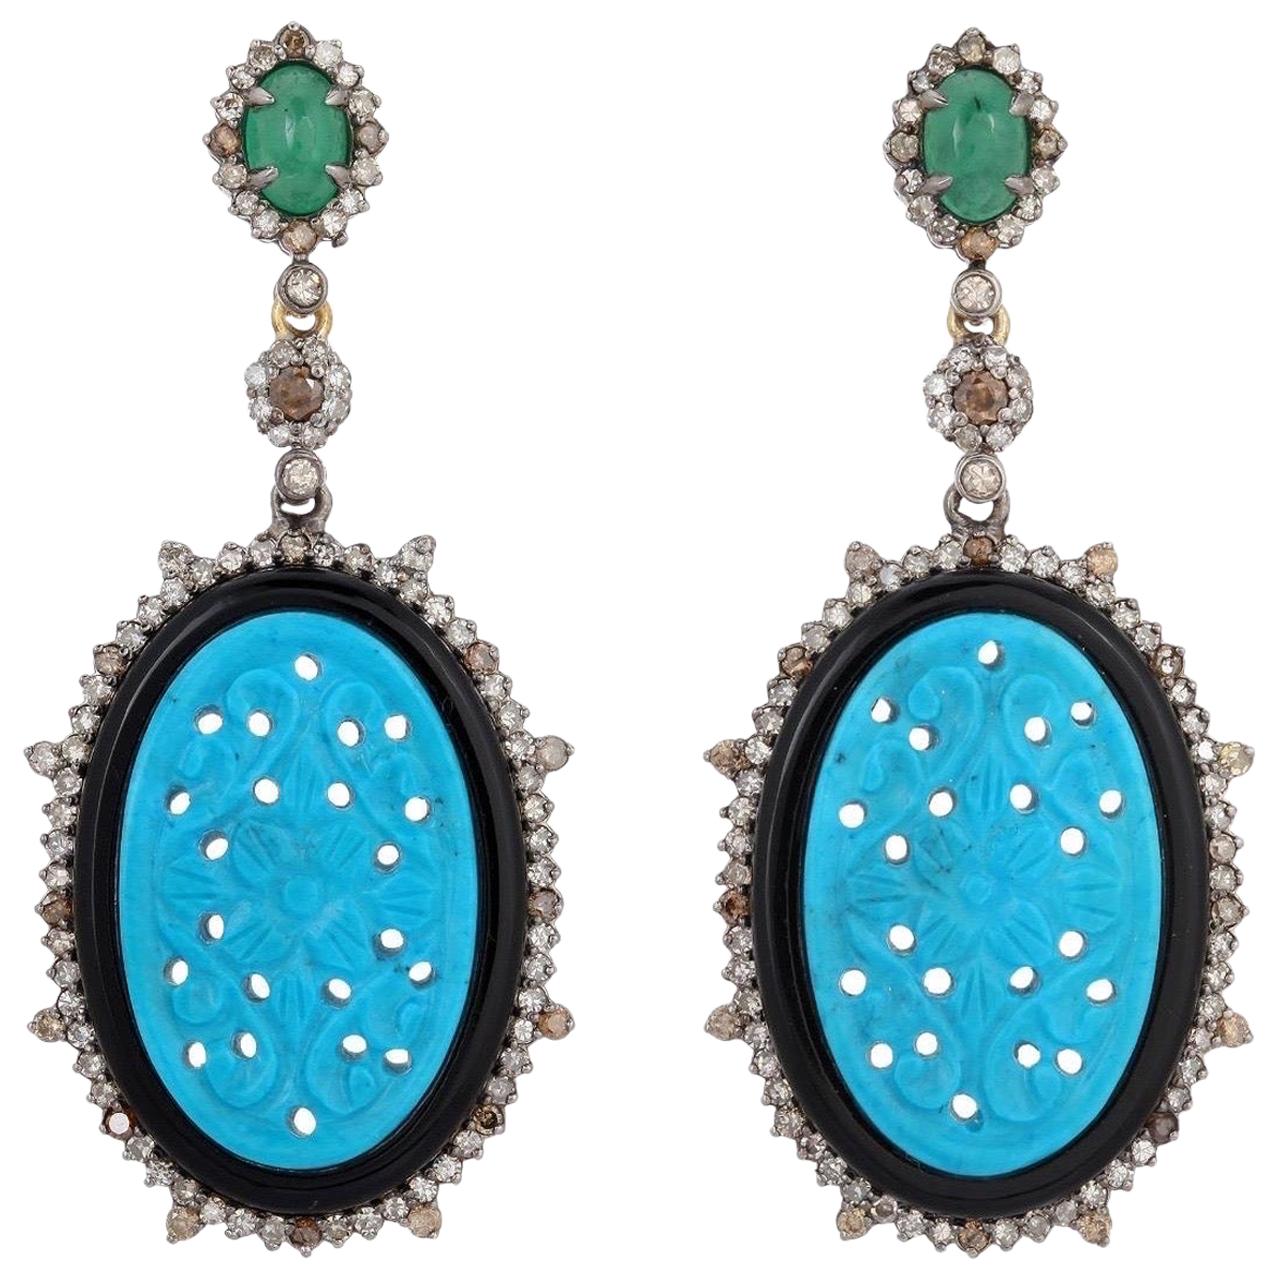 Boucles d'oreilles sculptées en turquoises, émeraudes, onyx noir et diamants